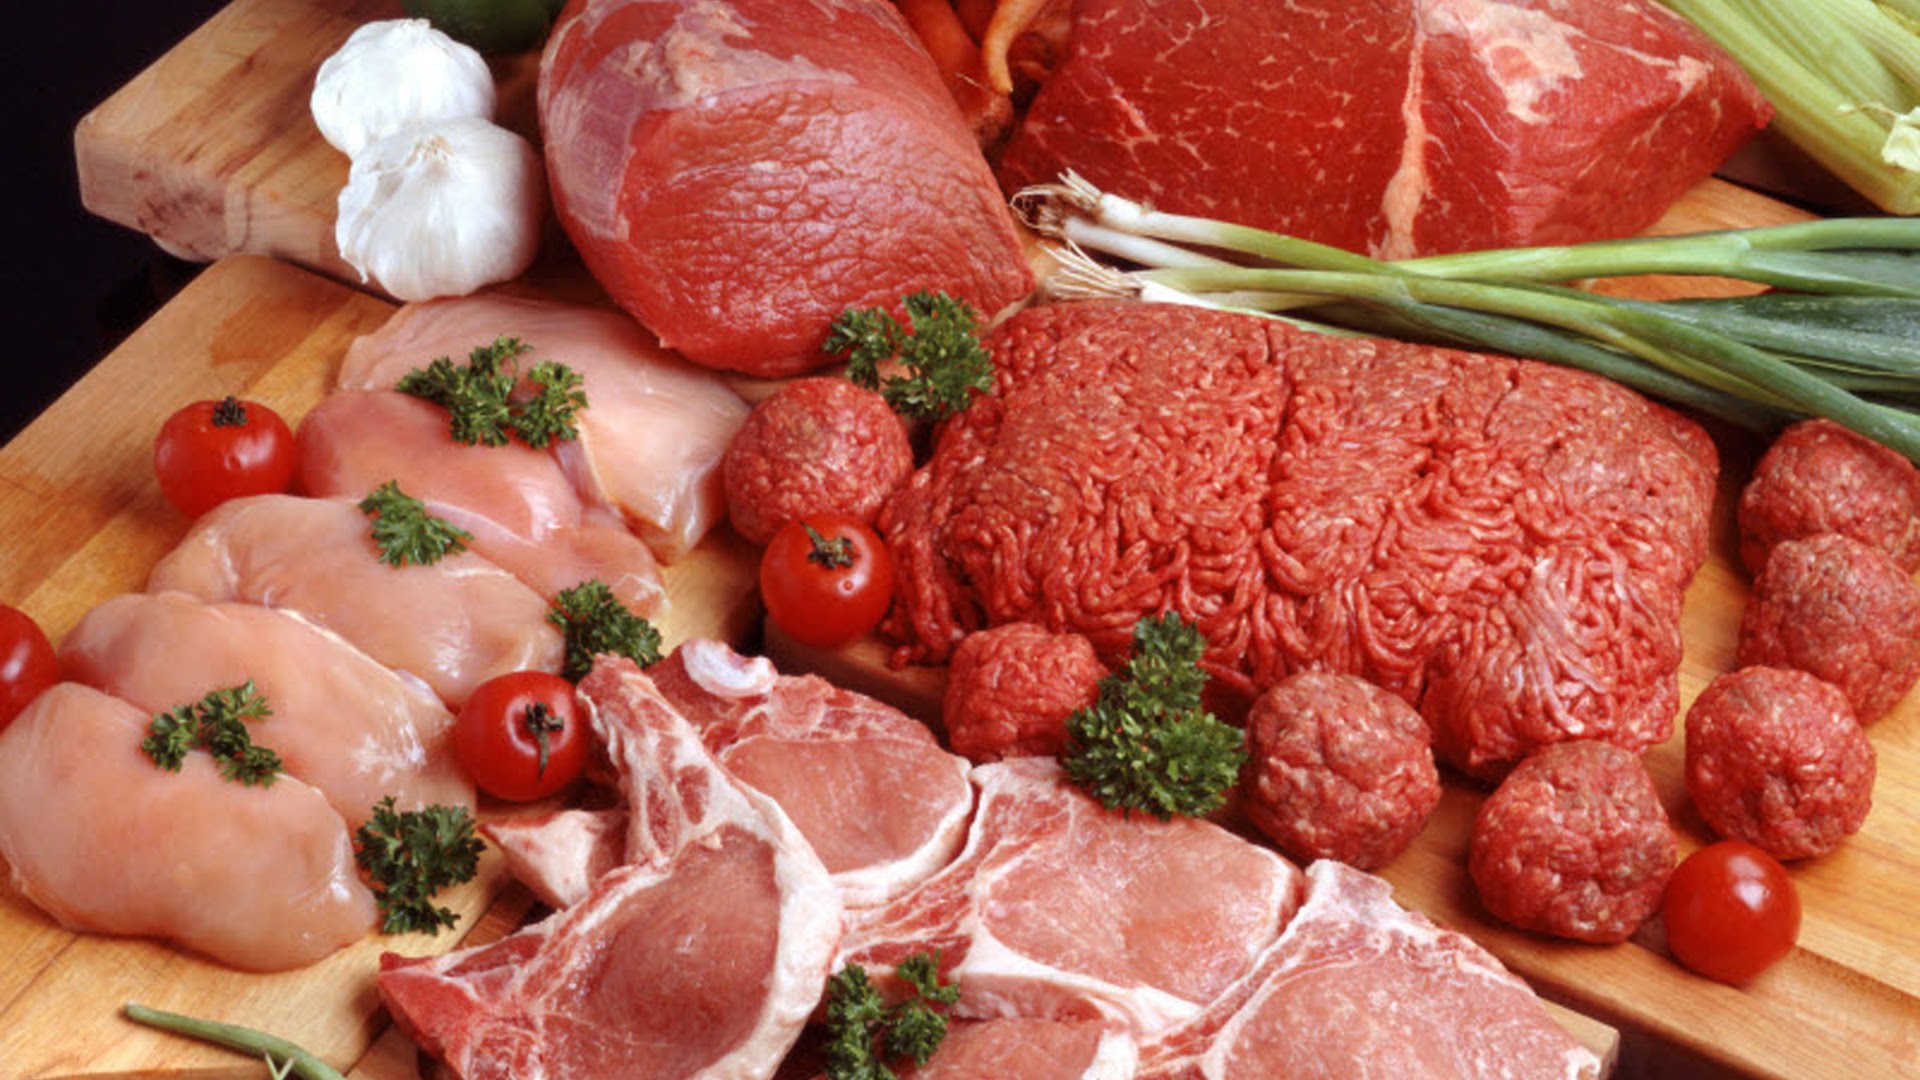 Методики анализа на видовую принадлежность мяса